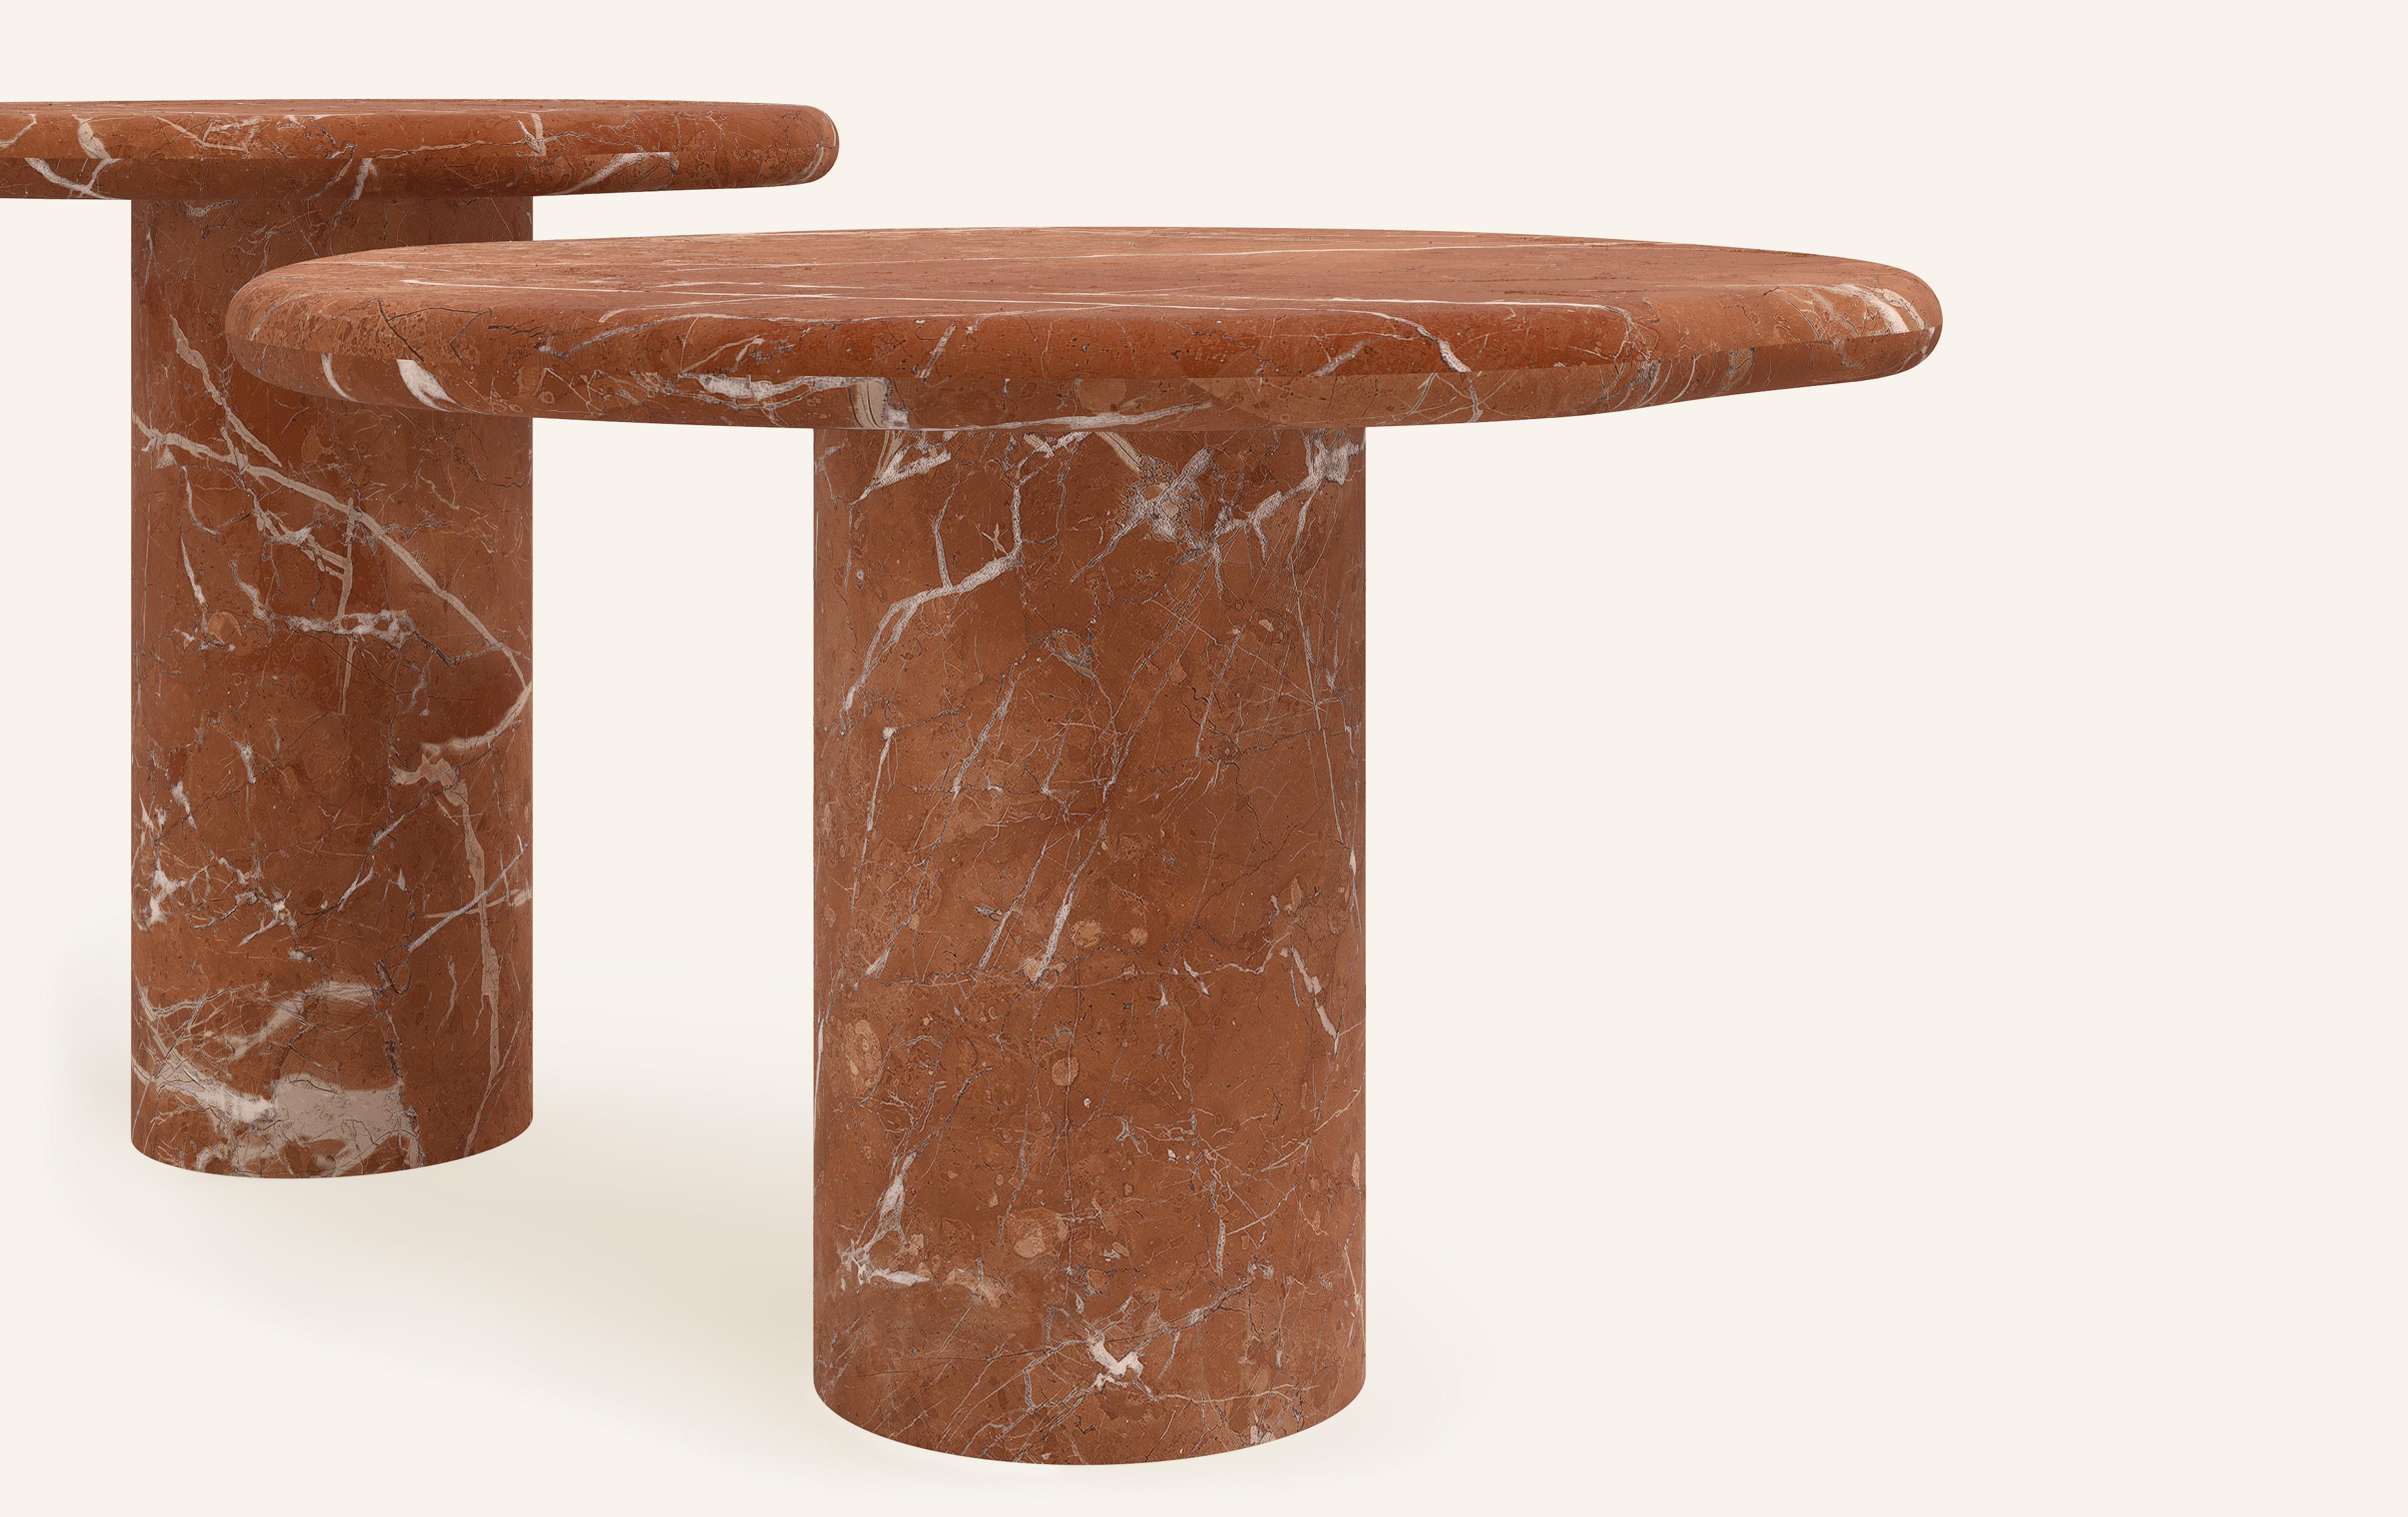 Organic Modern FORM(LA) Lago Round Side Table 18”L x 18”W x 18”H Rojo Alicante Marble For Sale